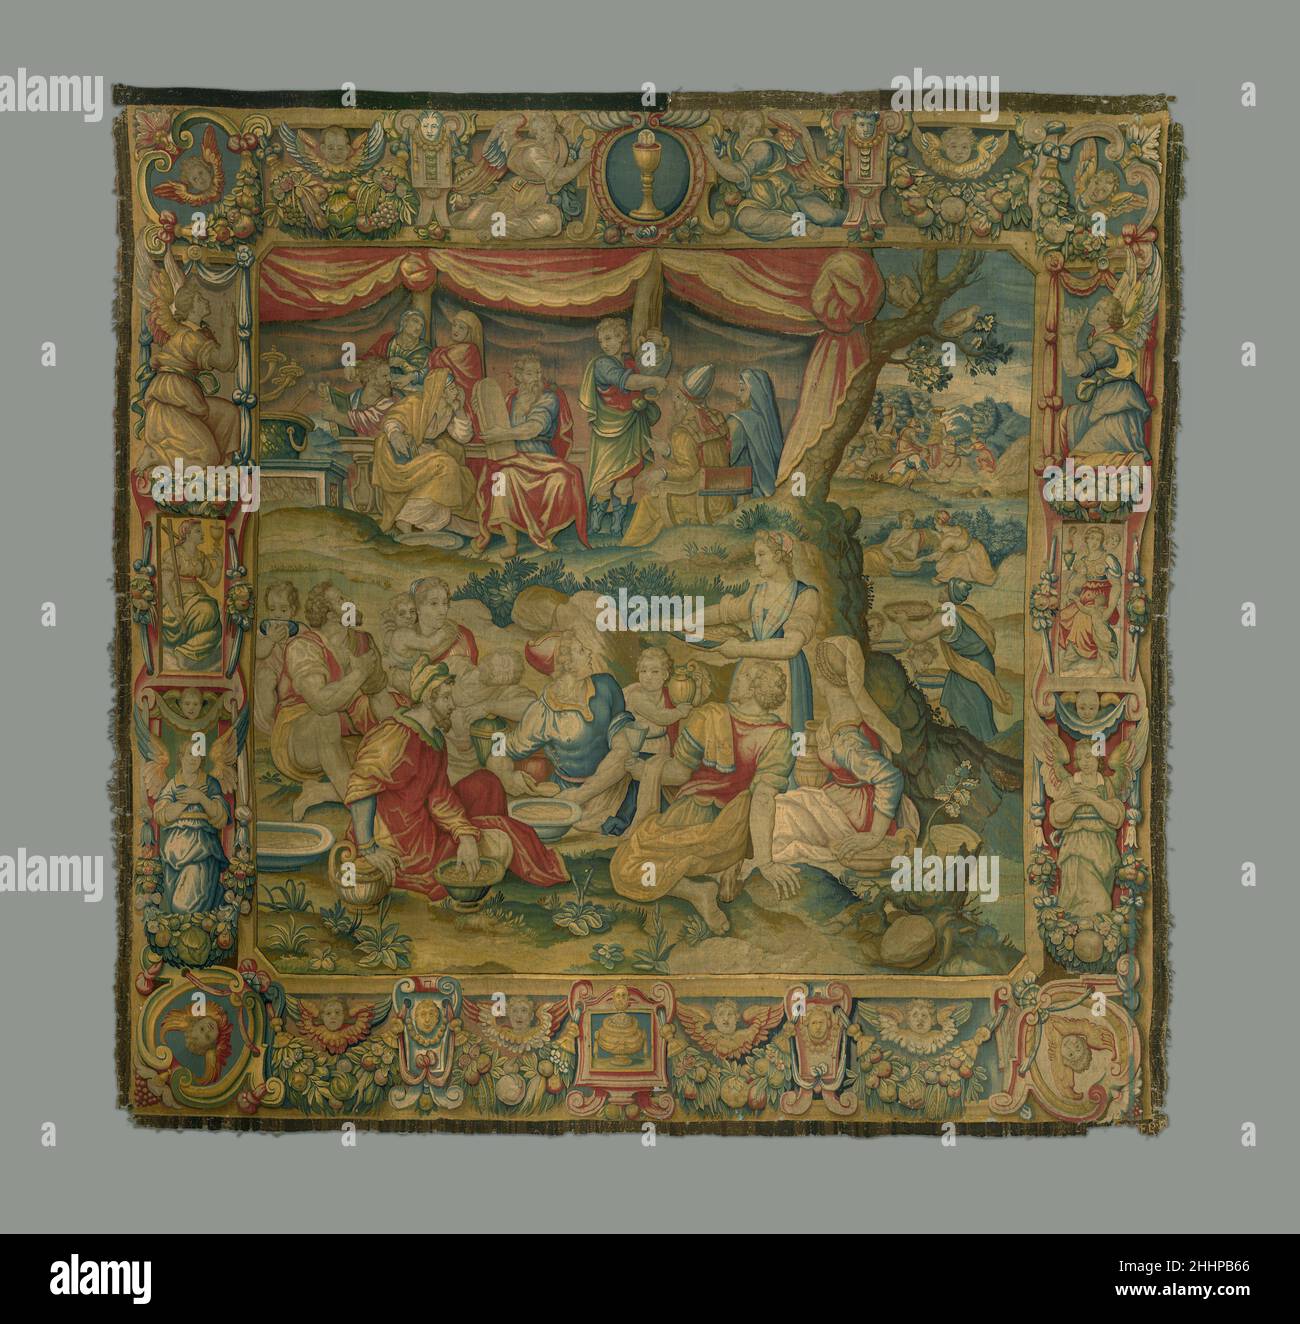 Le rassemblement de Manna 1595–96 conçu par Alessandro Allori Italien représentant les enfants d'Israël rassemblant manna (Exode 16) et Moïse tenant les tablettes sur lesquelles il a inscrit les dix Commandements, cette tapisserie était l'une des trois (d'un ensemble prévu de cinq)Fabriqué en 1595/96 pour la cathédrale de Côme.C'est un exemple rare d'une commission privée sous les ateliers de tapisserie de Florence, dont la production était largement réservée aux Médicis.Selon les documents contractuels, les tapisseries devaient être de qualité moyenne et chacune serait tissée en huit mois (deux étaient requises f Banque D'Images